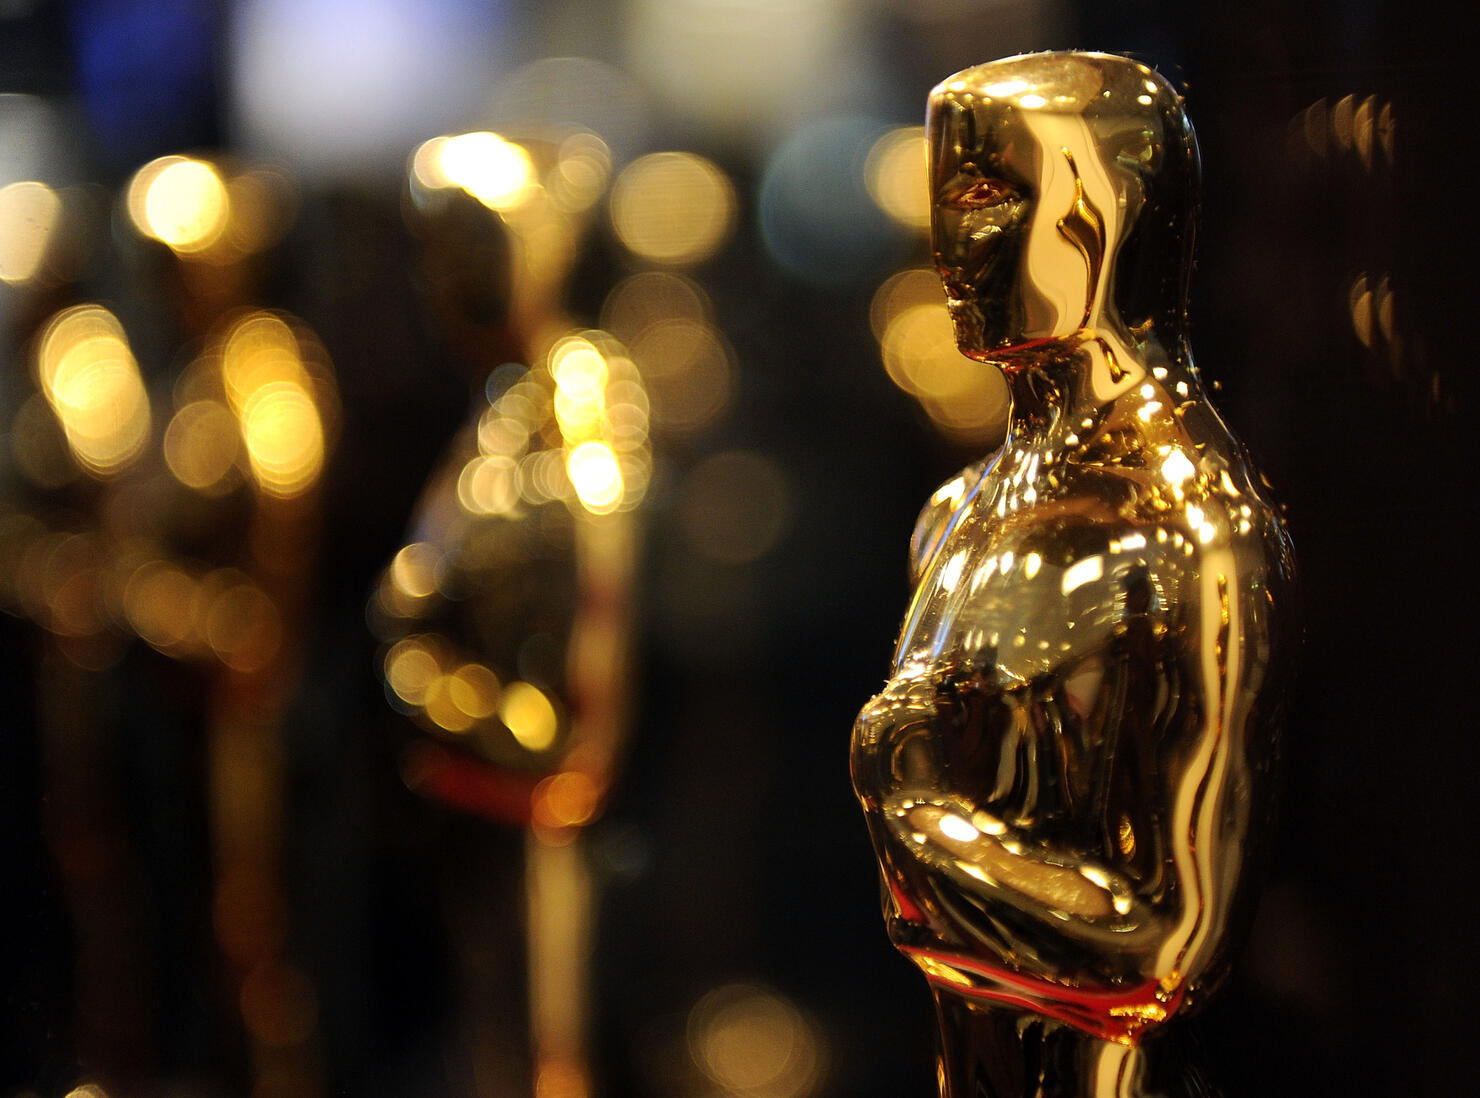 Oscars 2021: The winners' list in full